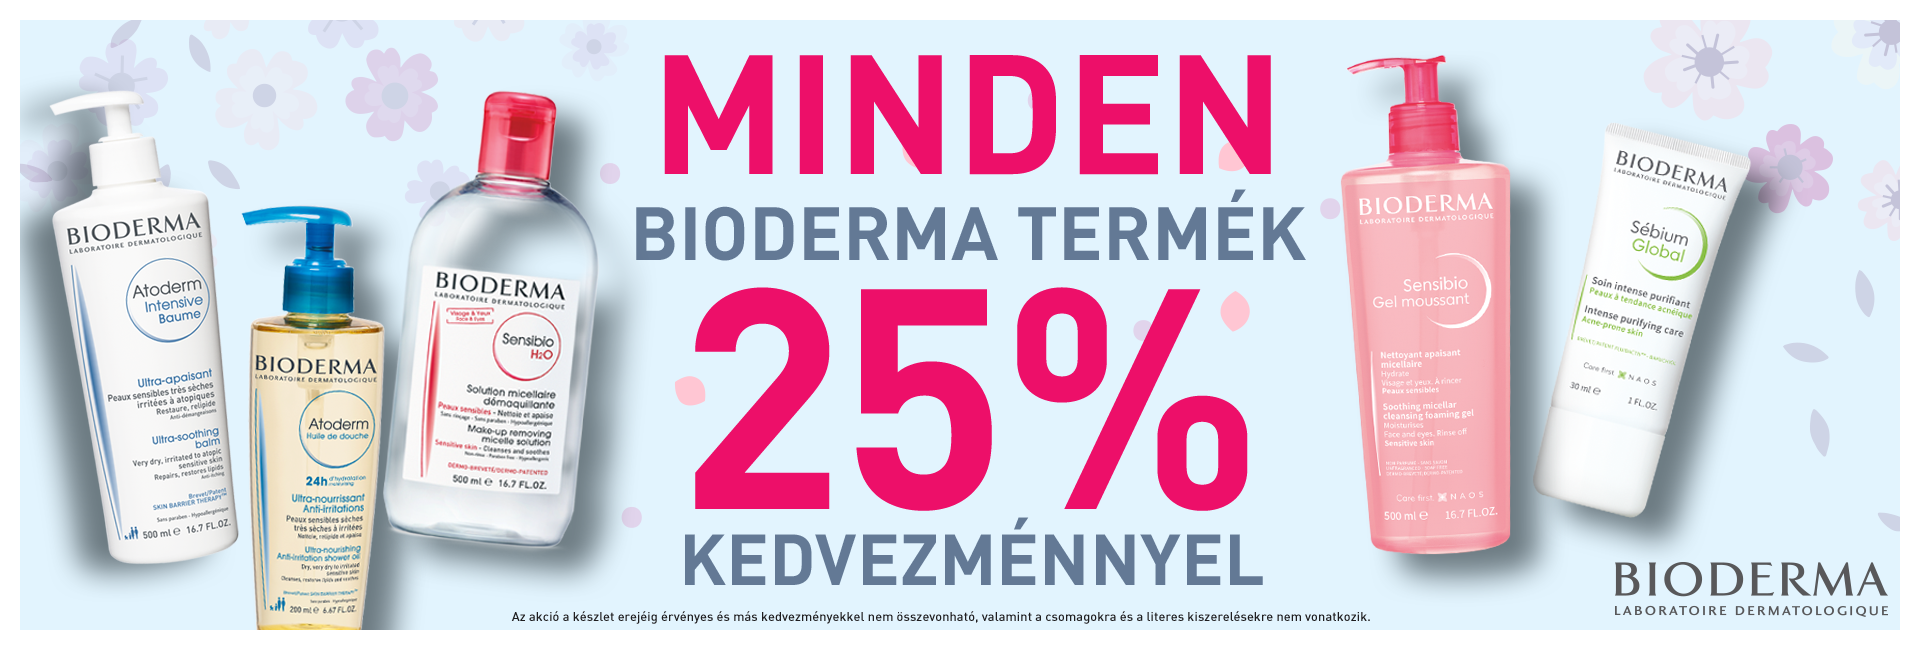 JOY NAPOK: 2020. május 14-18. között minden Bioderma terméket 25% kedvezménnyel kínálunk!